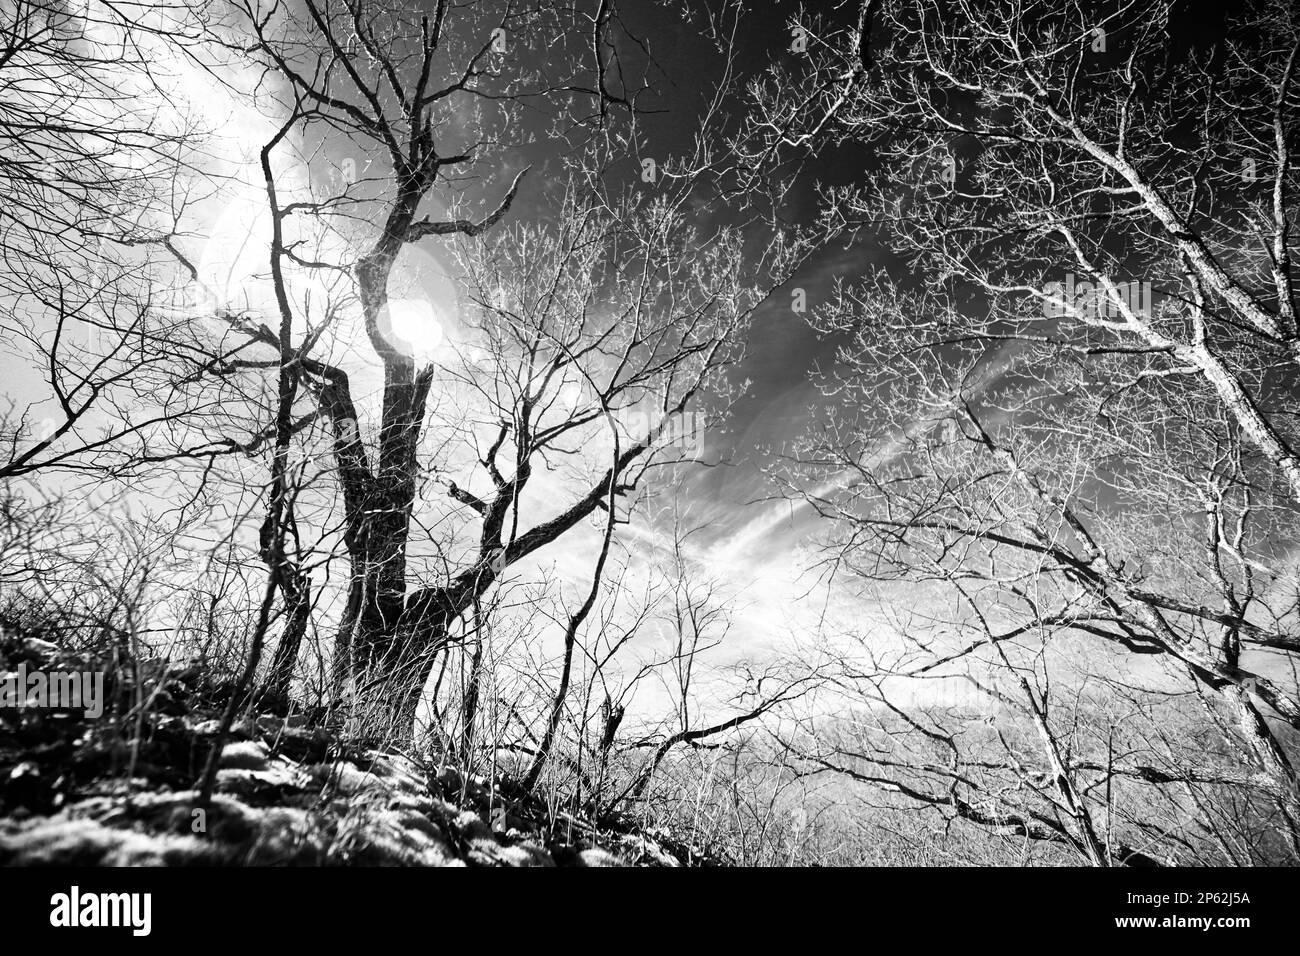 Ein Schwarzweiß-Infrarotbild einiger ruhender Bäume vor einem kontrastfarbenen Himmel an einem späten Wintermorgen. Das Bild ruft Chaos und verzweigte Gedanken hervor. Stockfoto